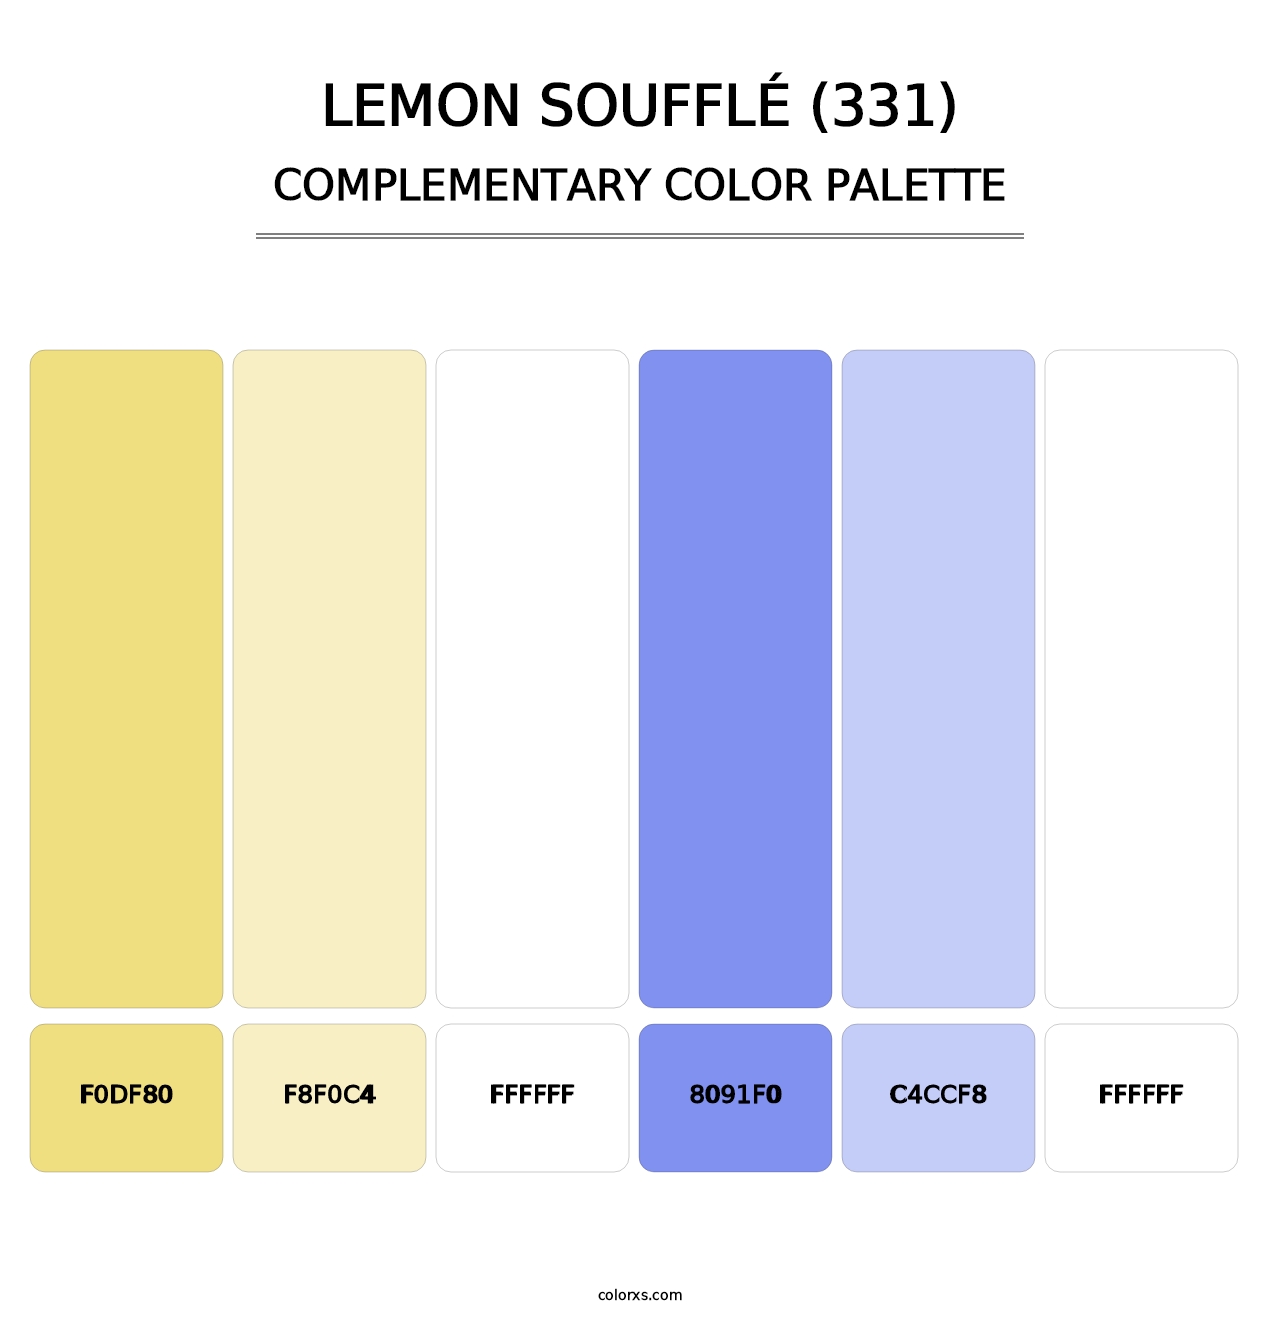 Lemon Soufflé (331) - Complementary Color Palette